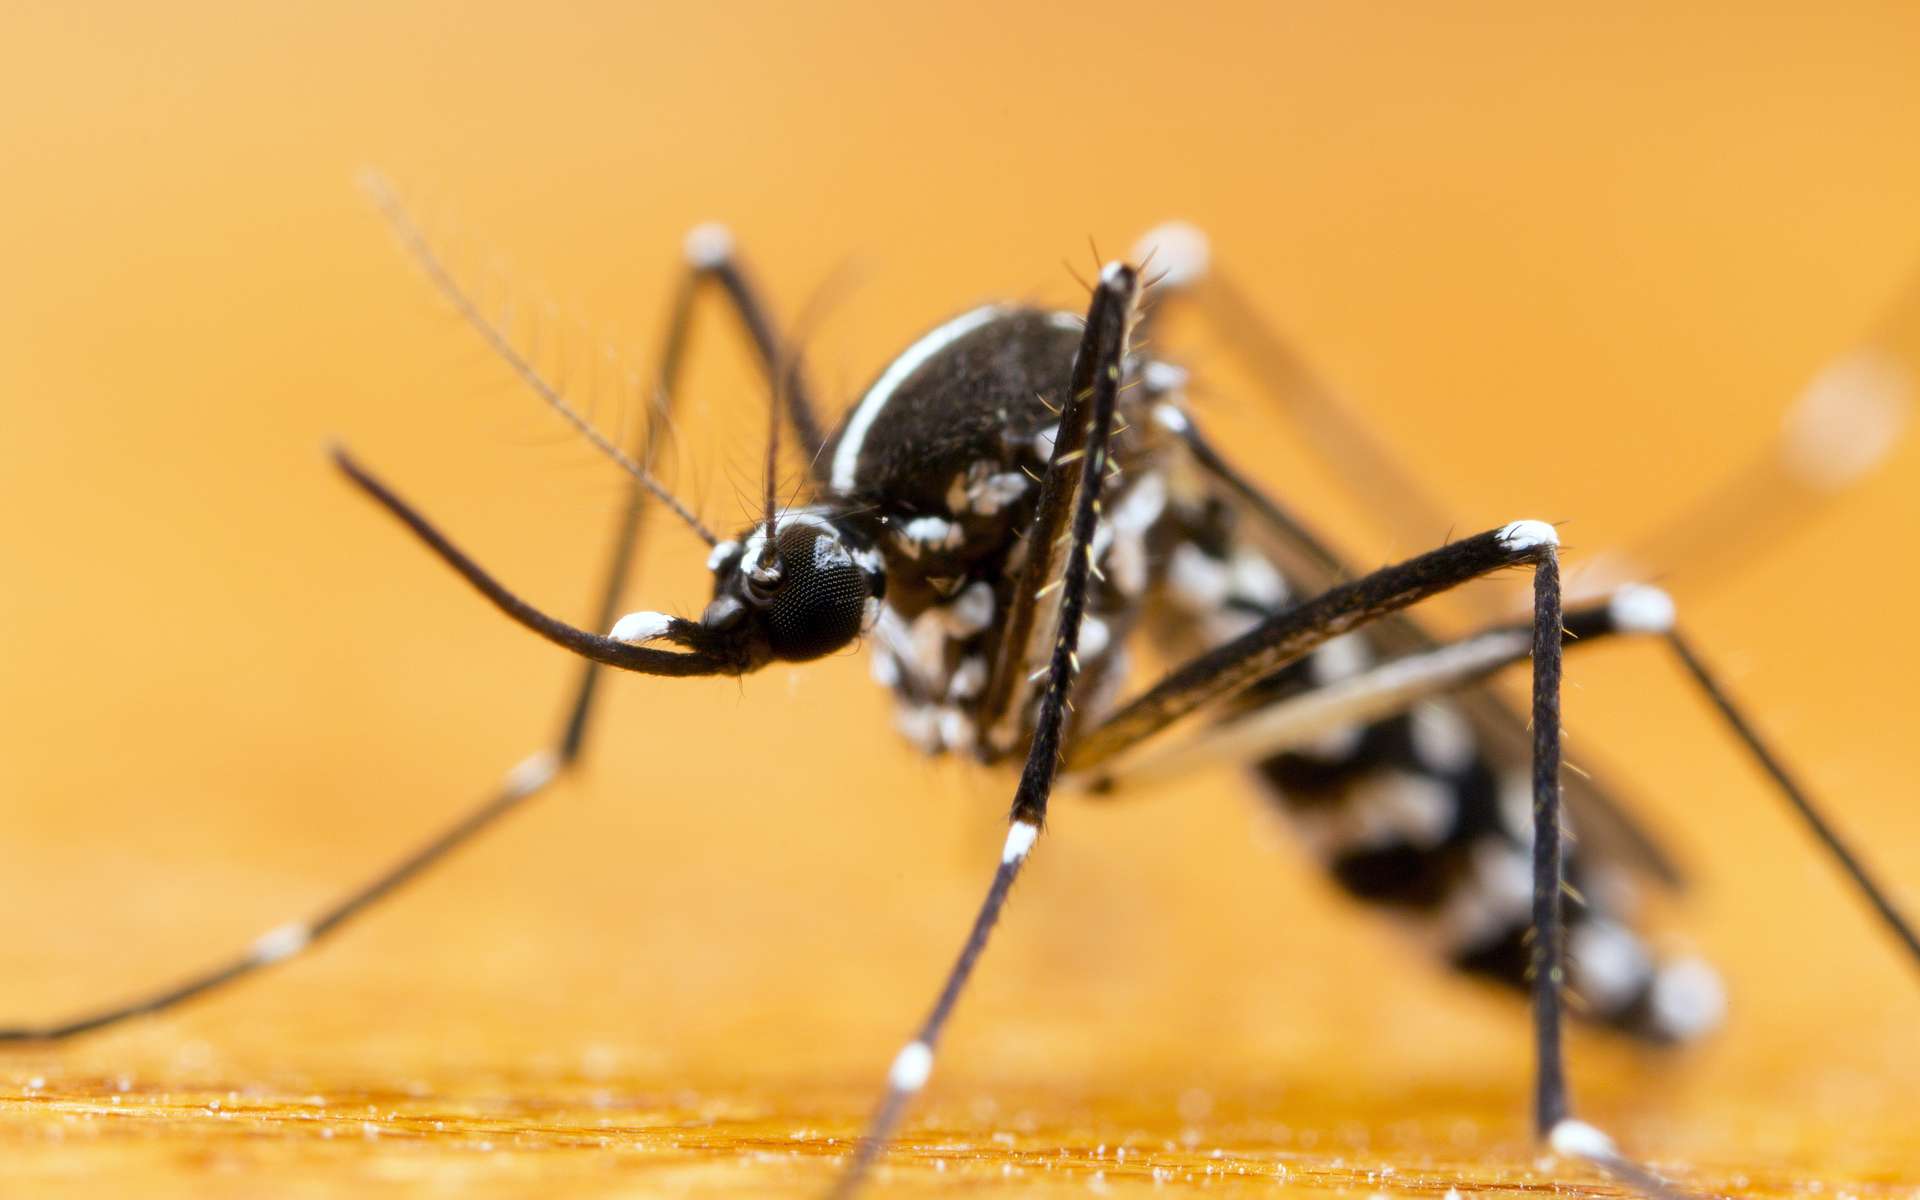 Le moustique-tigre peut désormais transmettre ces deux virus pathogènes aux humains